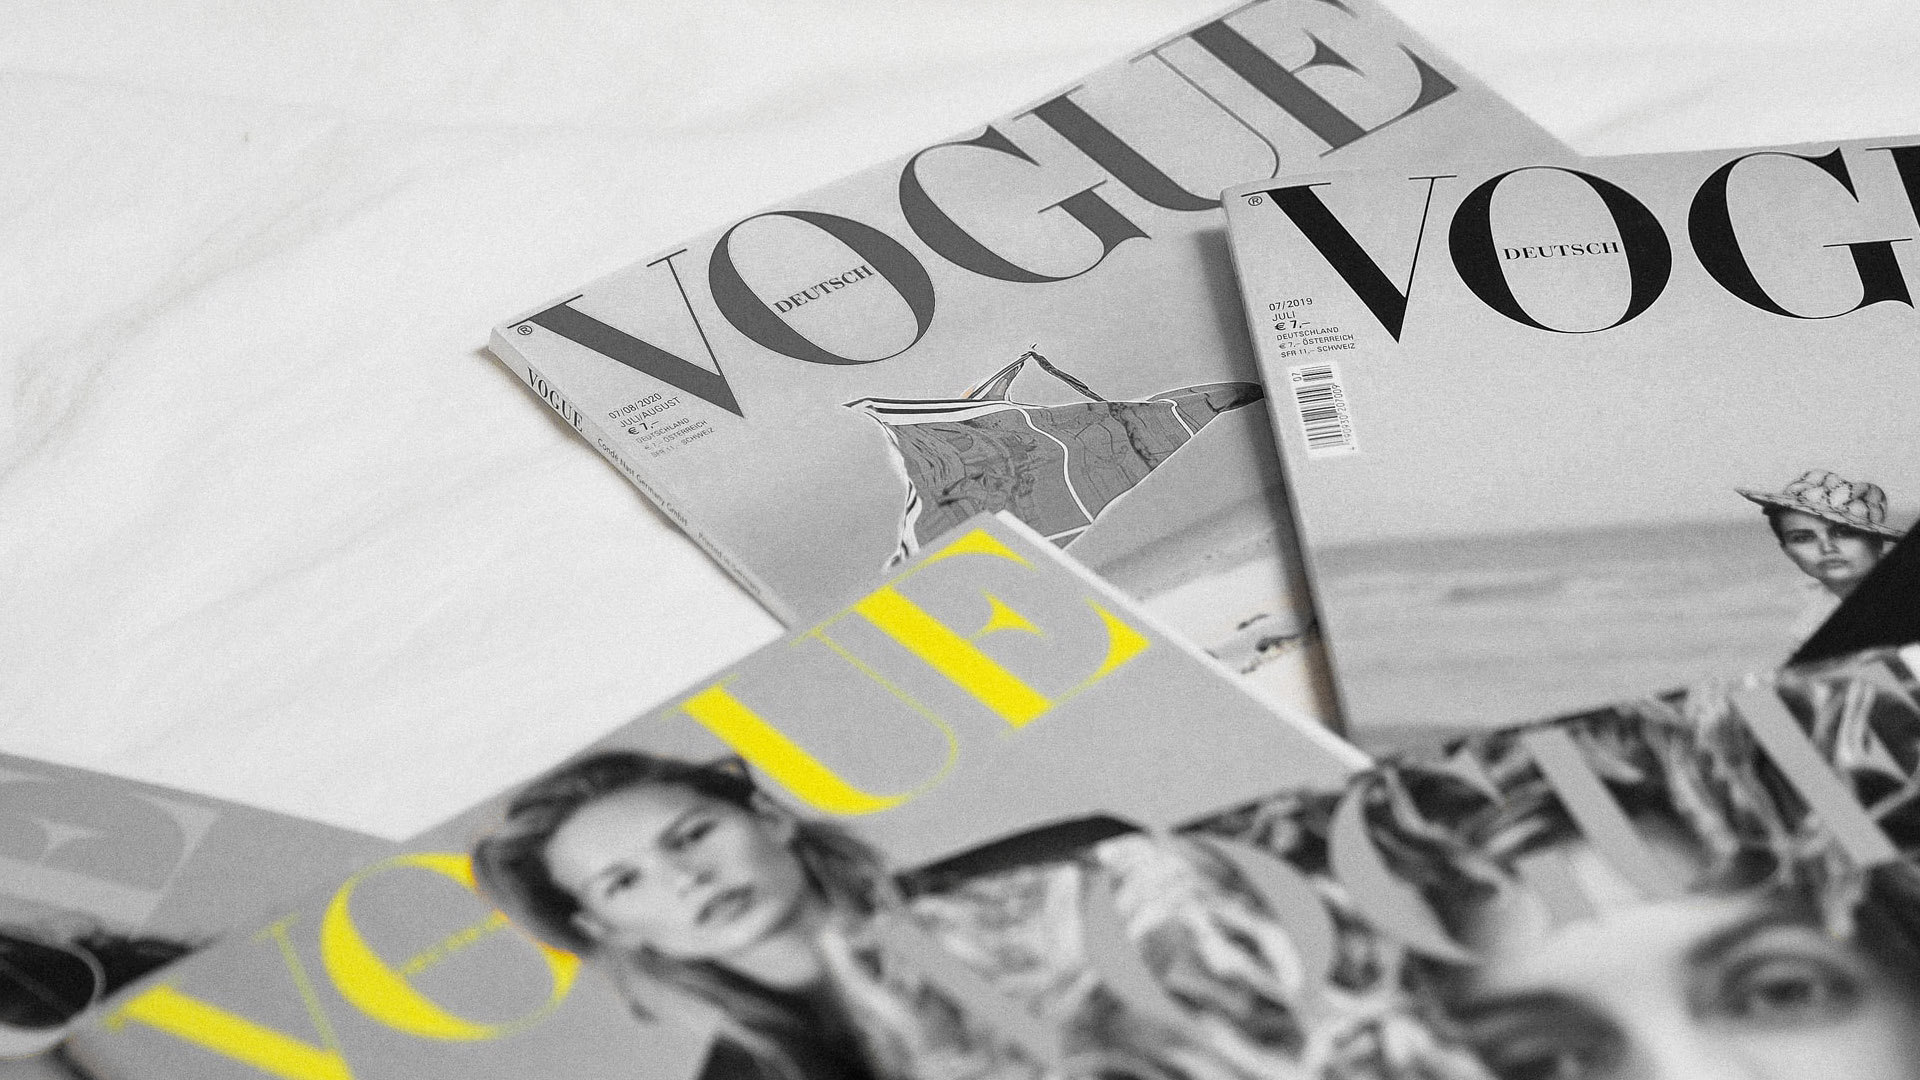 Copertina bianca Vogue Italia: è ora di riaccendere l’immaginazione